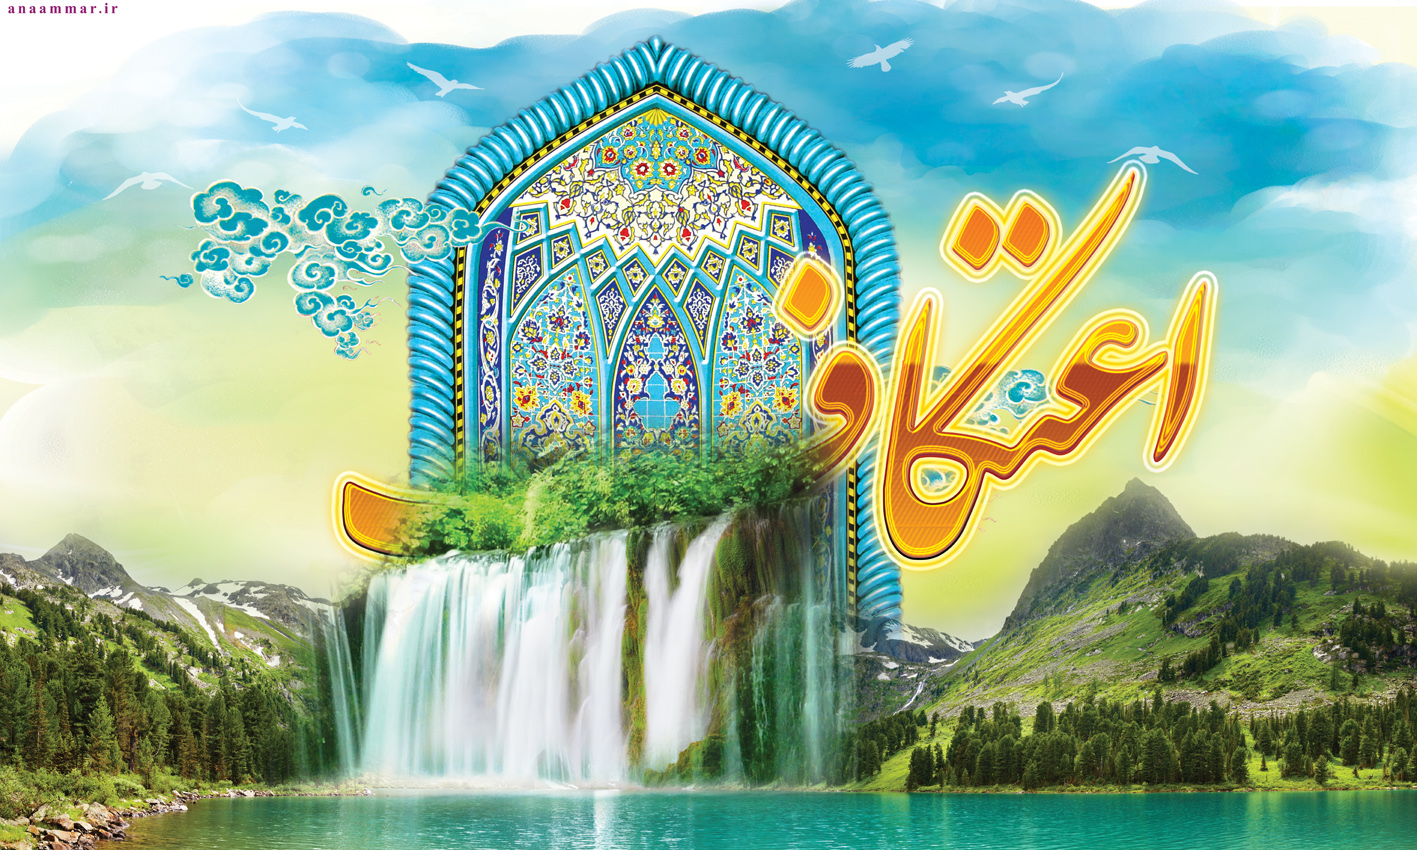 100 مسجد کهگیلویه وبویر احمد ، آماده پذیرایی معتکفان در ماه رجب